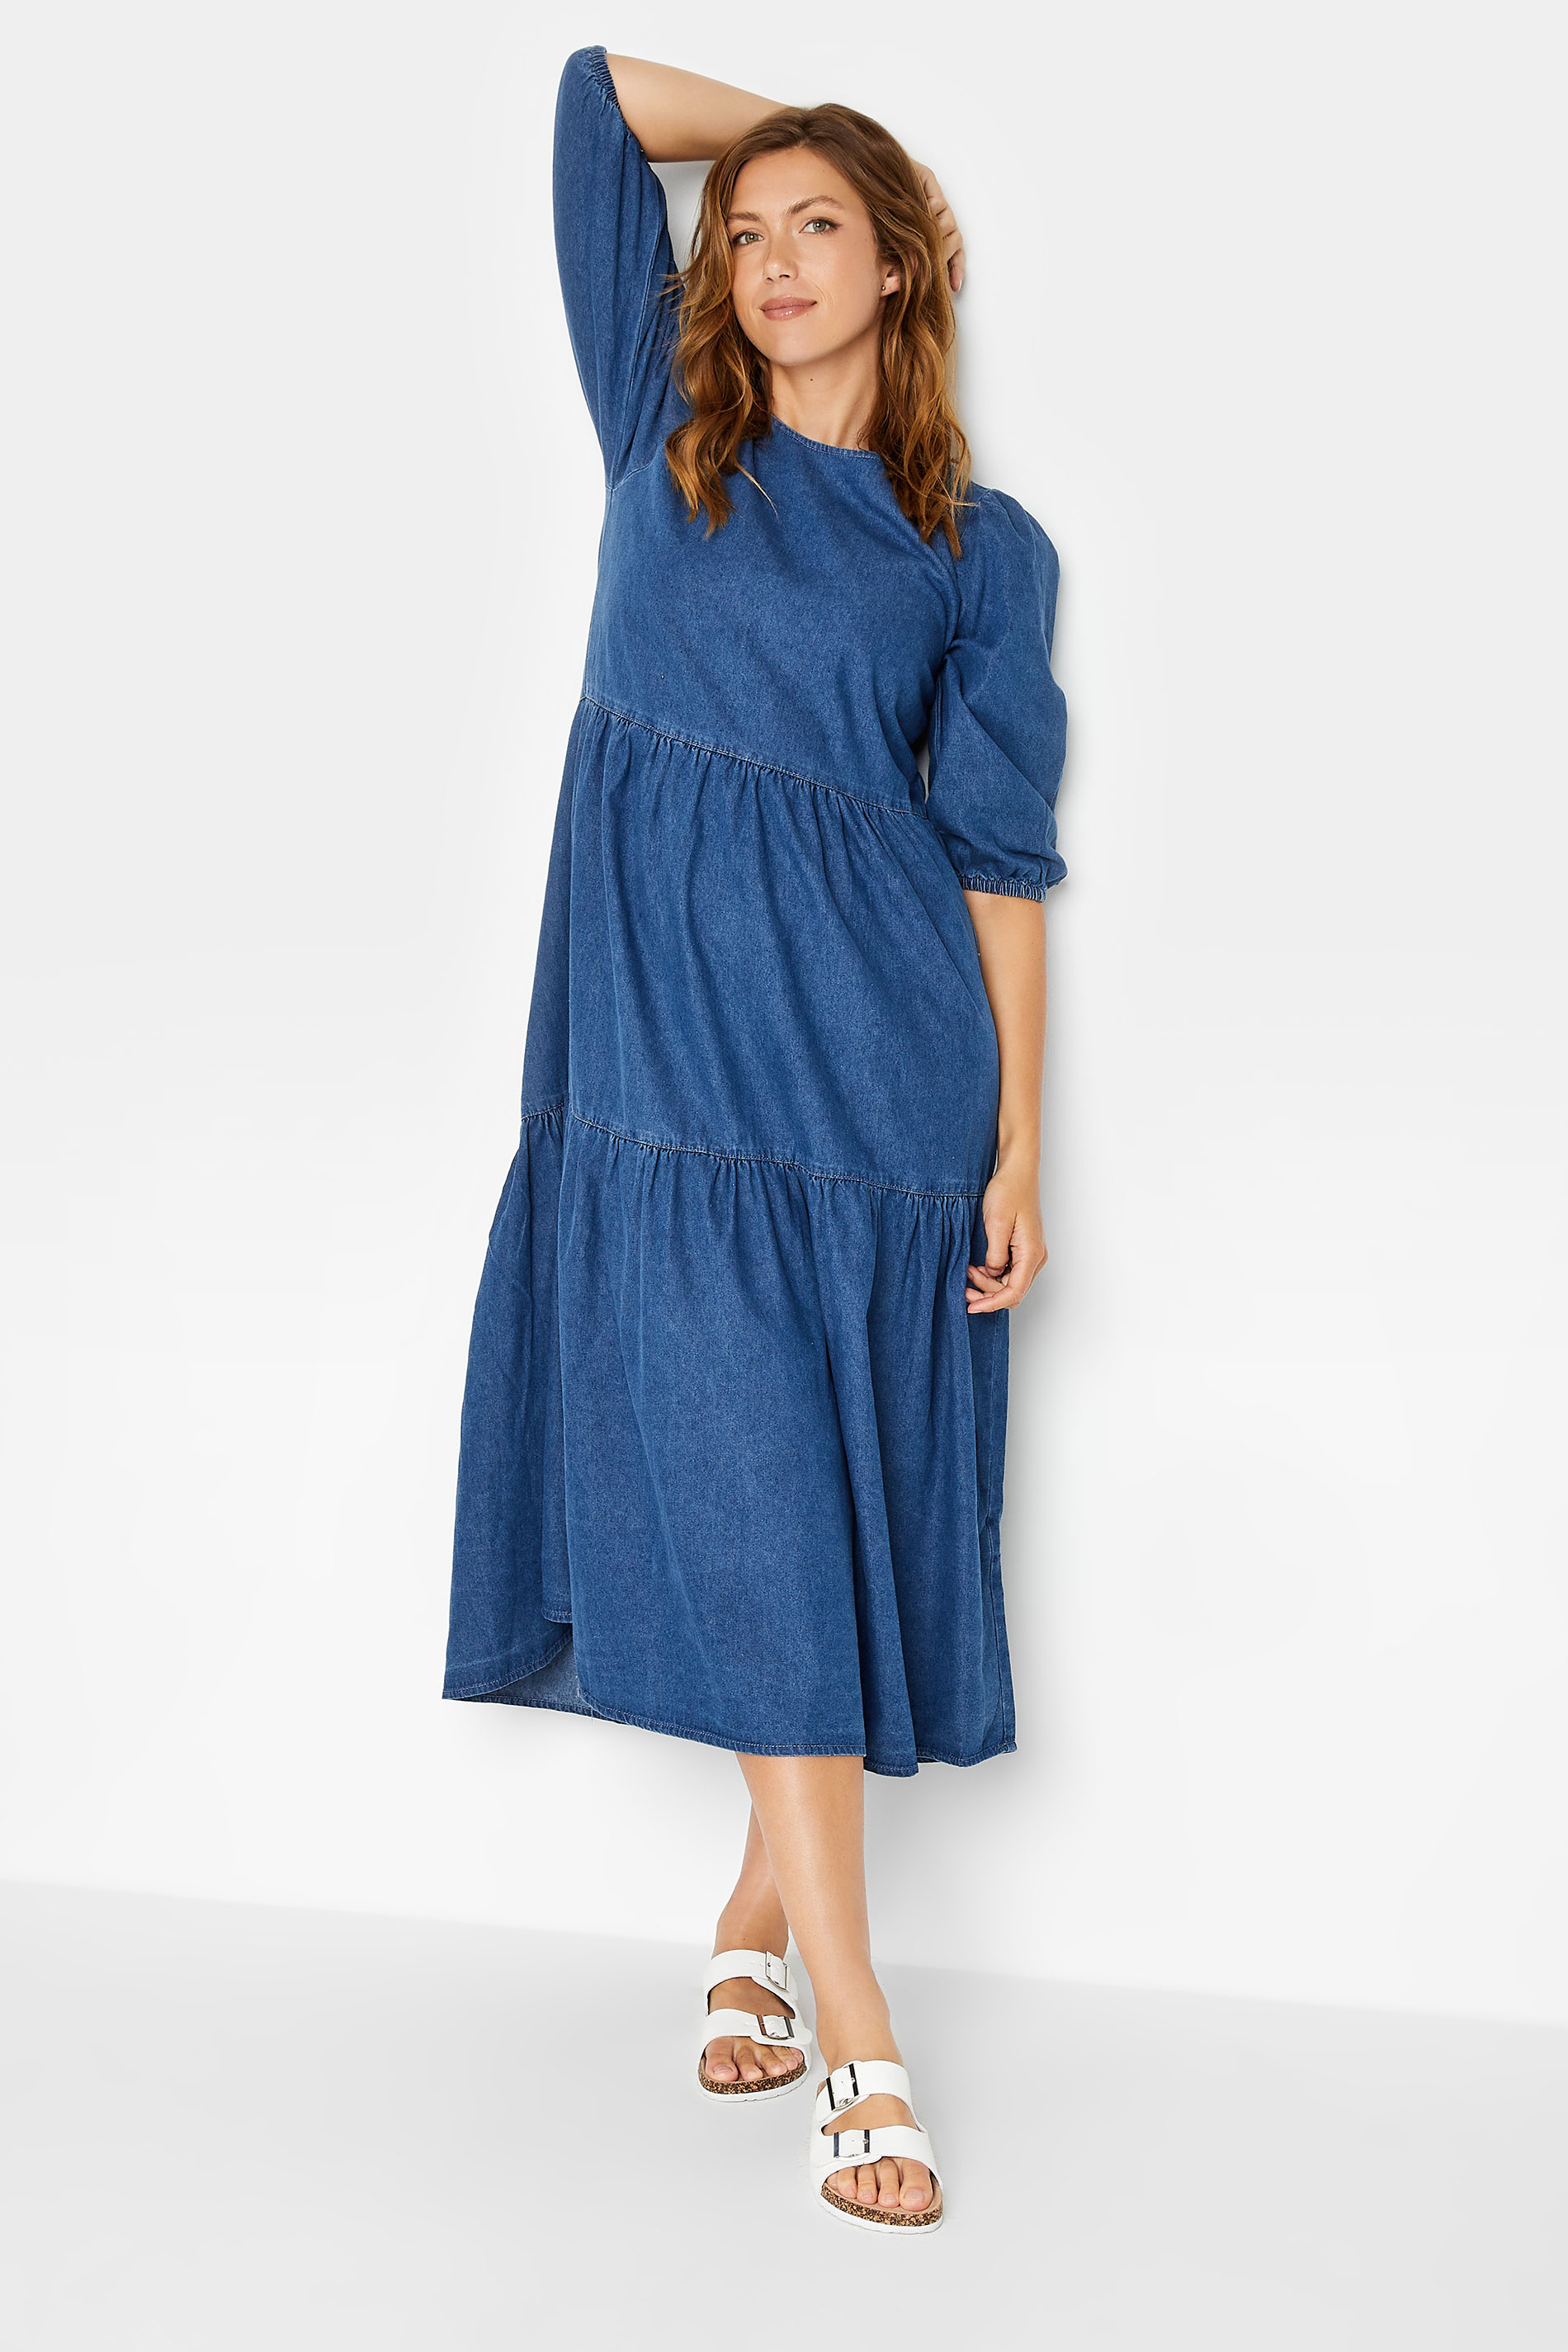 LTS Tall Women's Blue Denim Tiered Midi Dress | Long Tall Sally 1